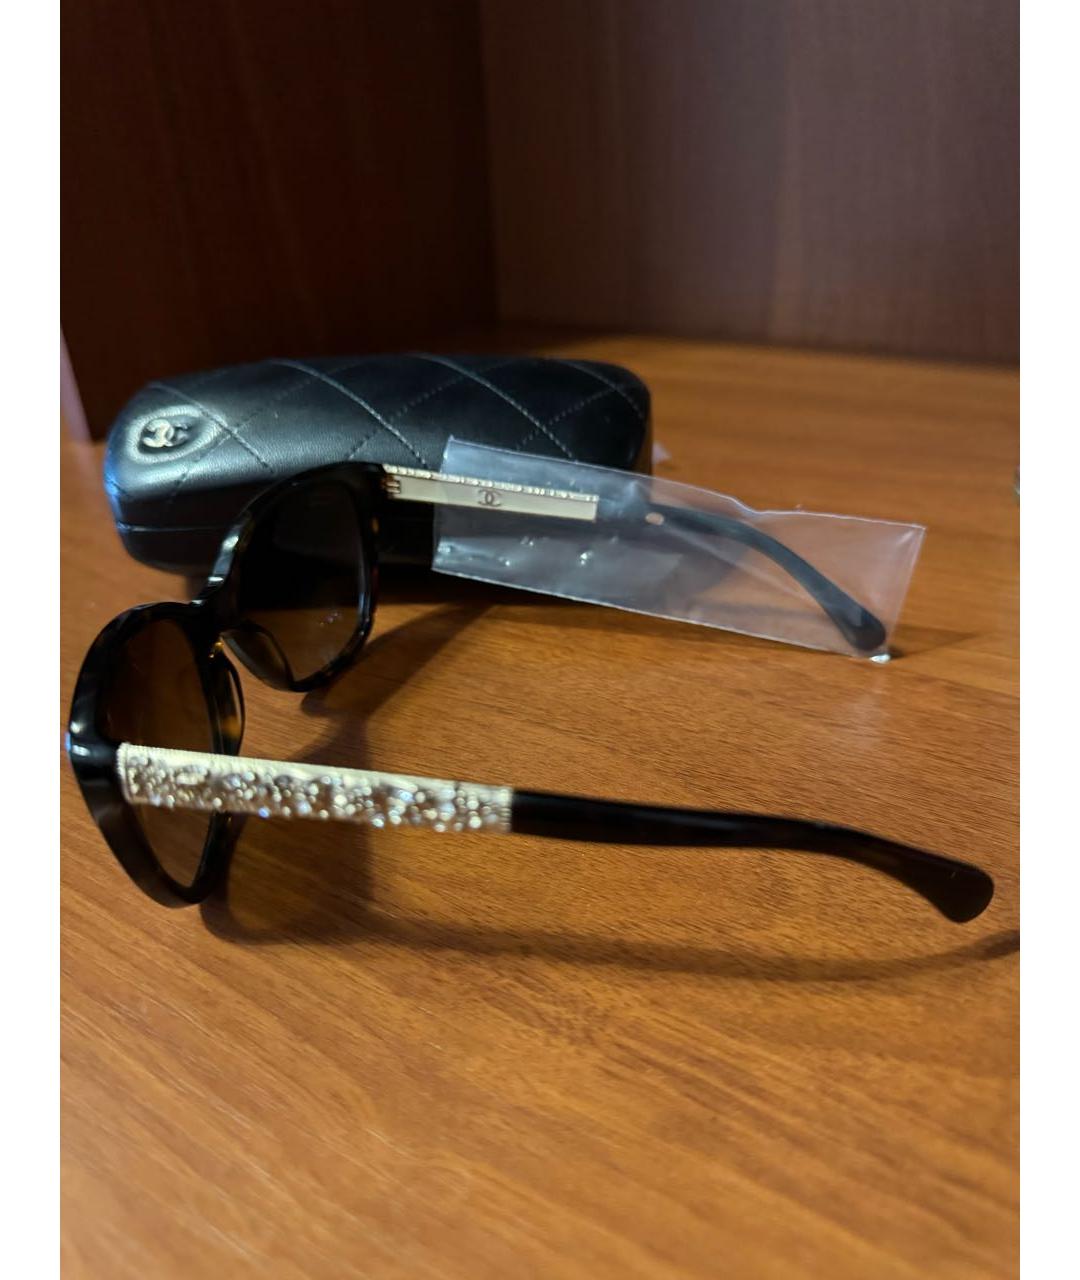 CHANEL Черные пластиковые солнцезащитные очки, фото 4